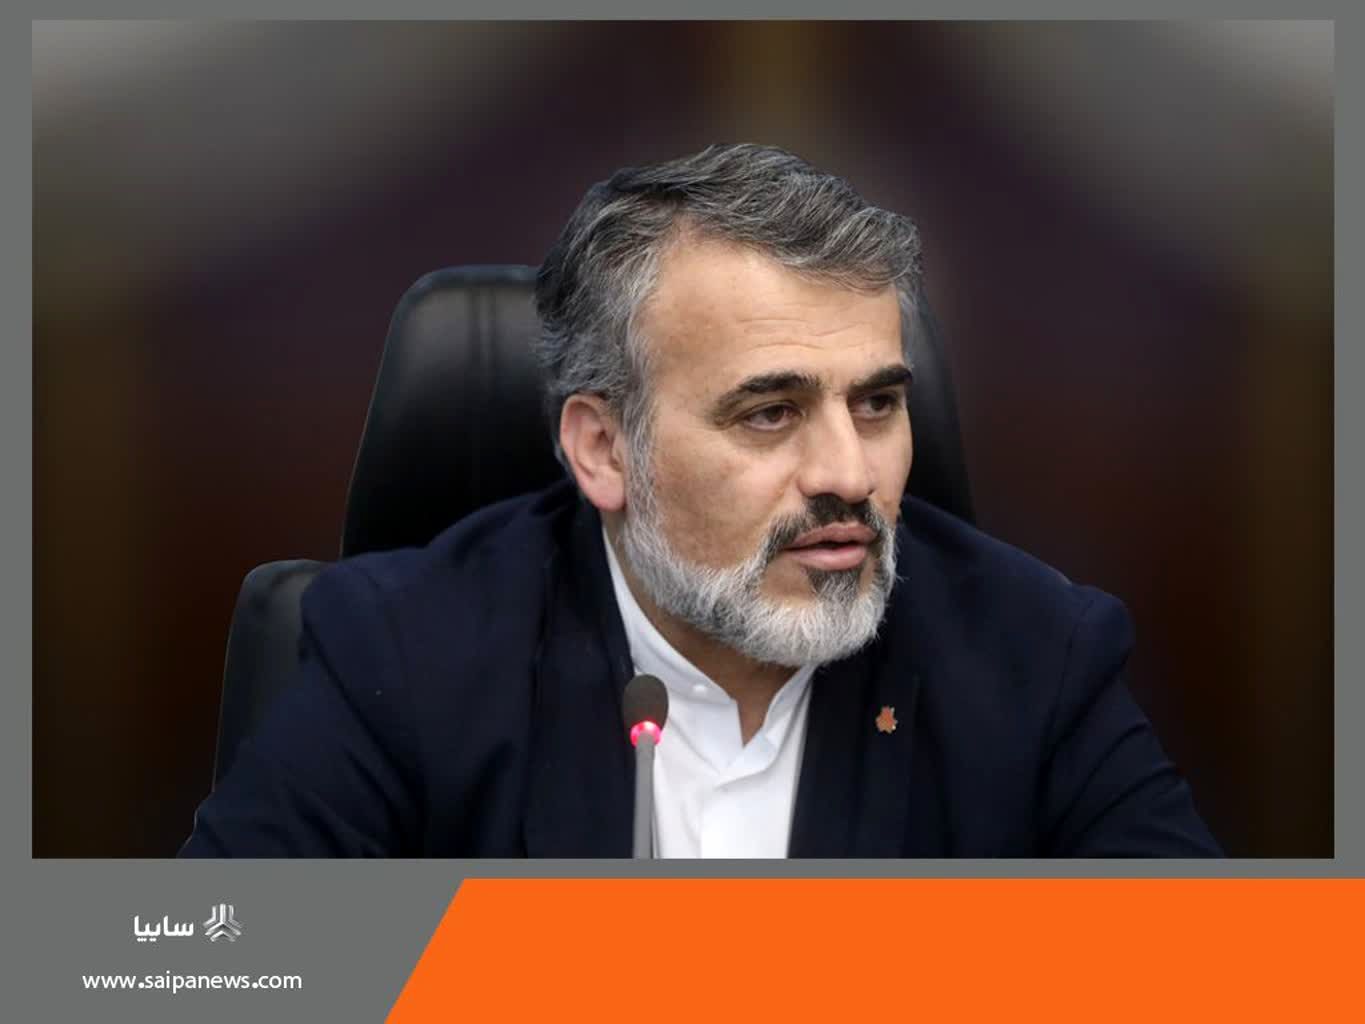 پیام تبریک مدیرعامل گروه خودروسازی سایپا به رئیس جمهور منتخب ایران